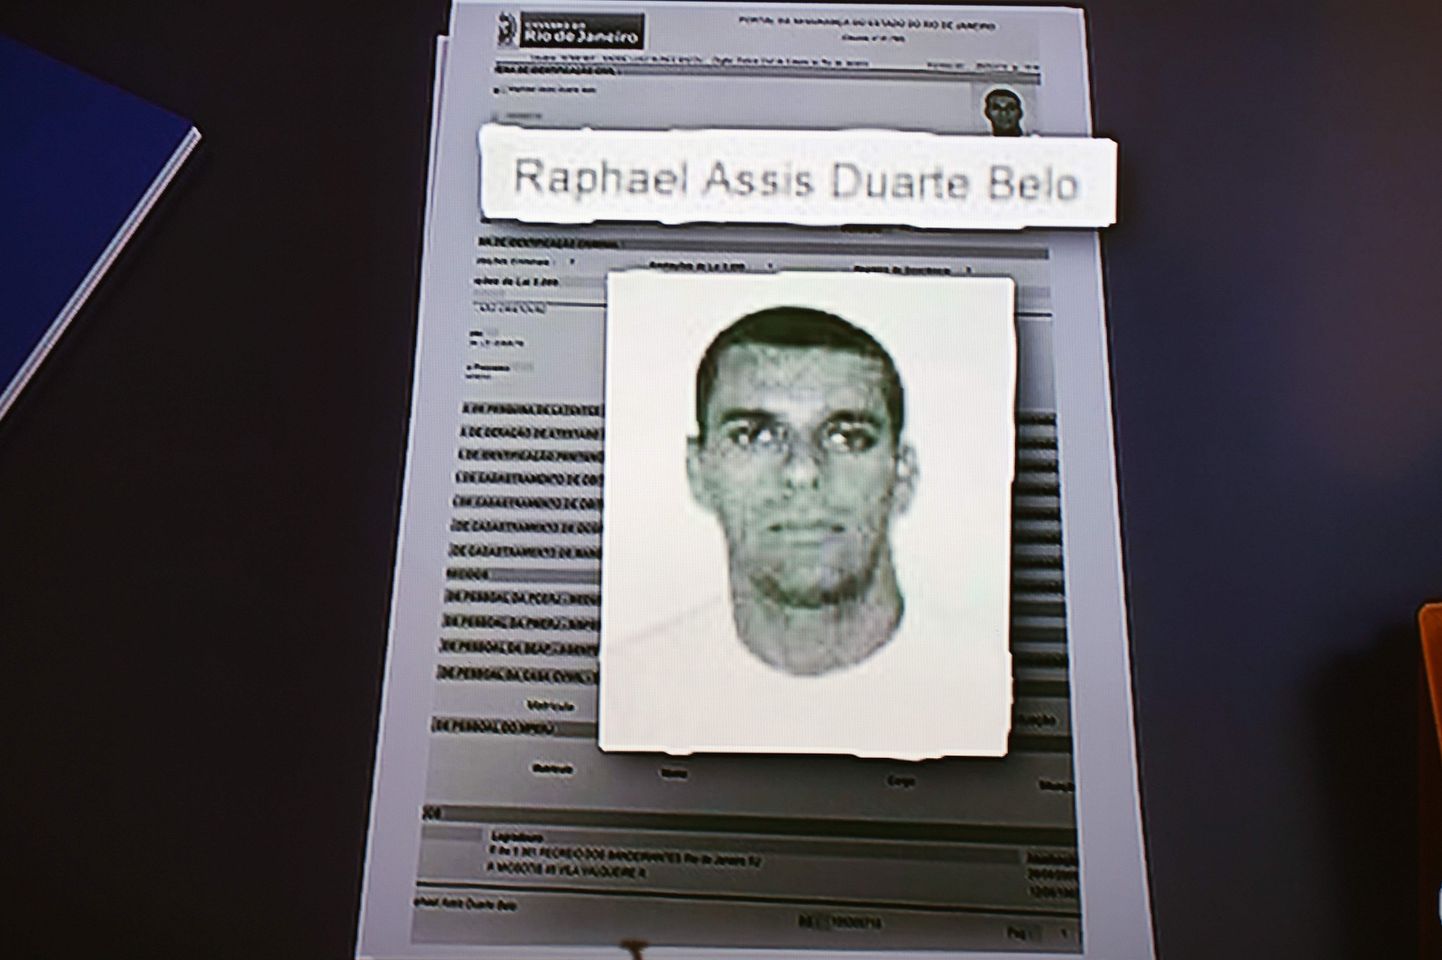 41-aastane Raphael Assis Duarte Belo on üks politsei tagaotsitavatest.